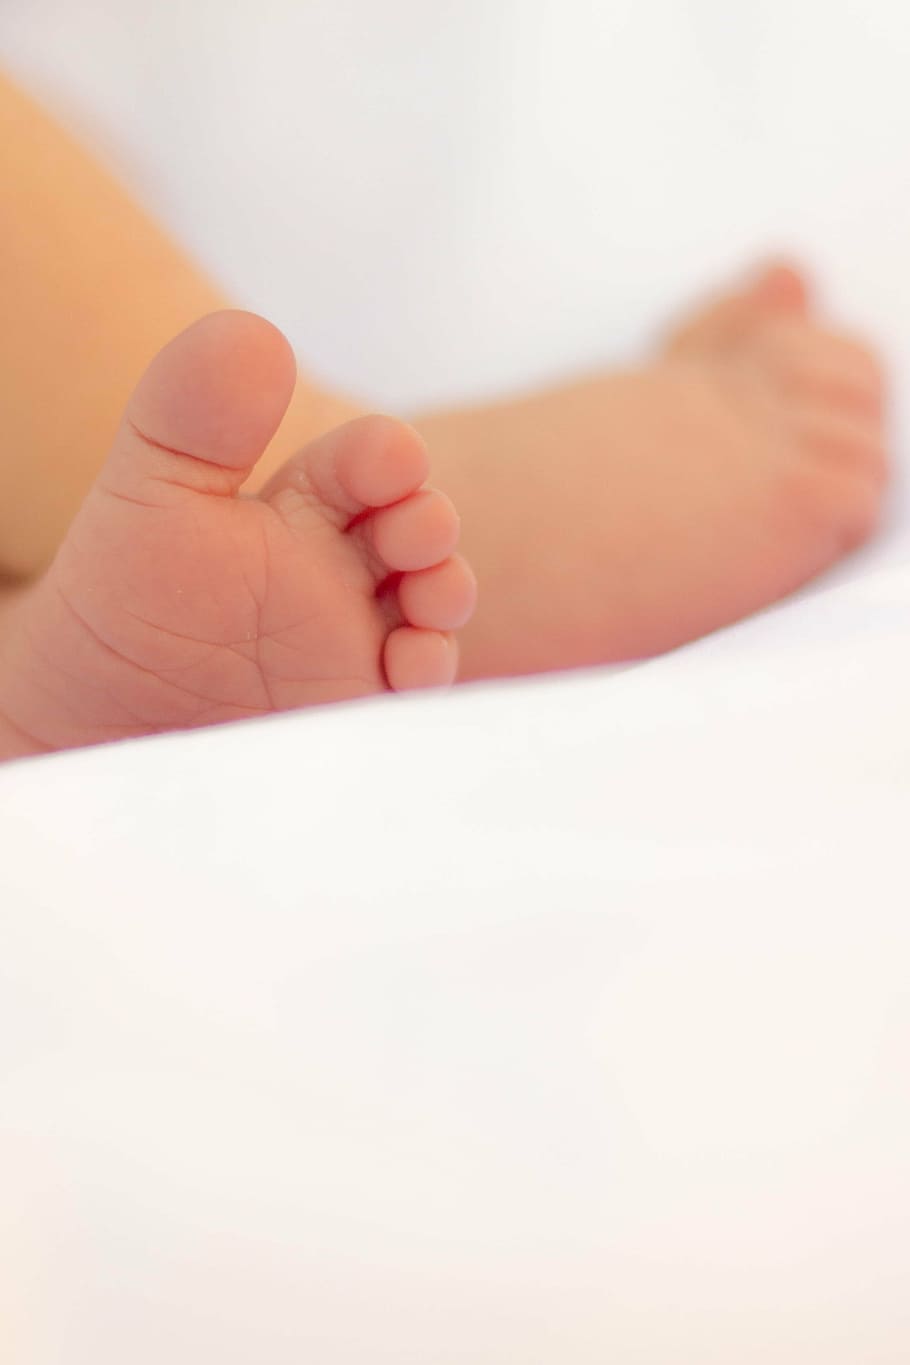 ножки младенца, жизнь, люди, человек, ребенок, малыш, ноги, рождение, рука человека, крупный план